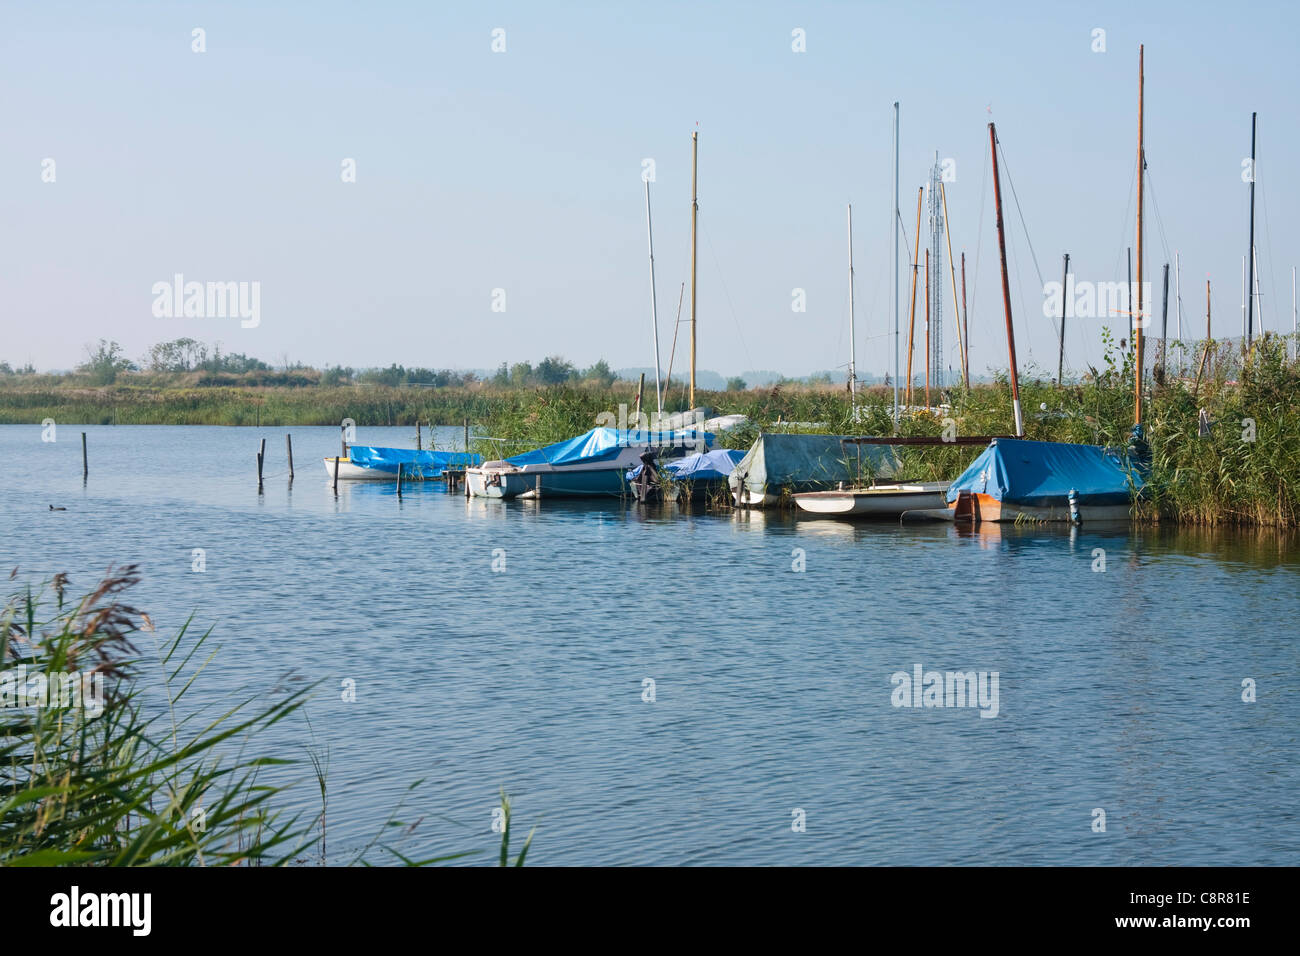 Una fila di barche ormeggiate su una via navigabile in Olanda, 2011 Foto Stock